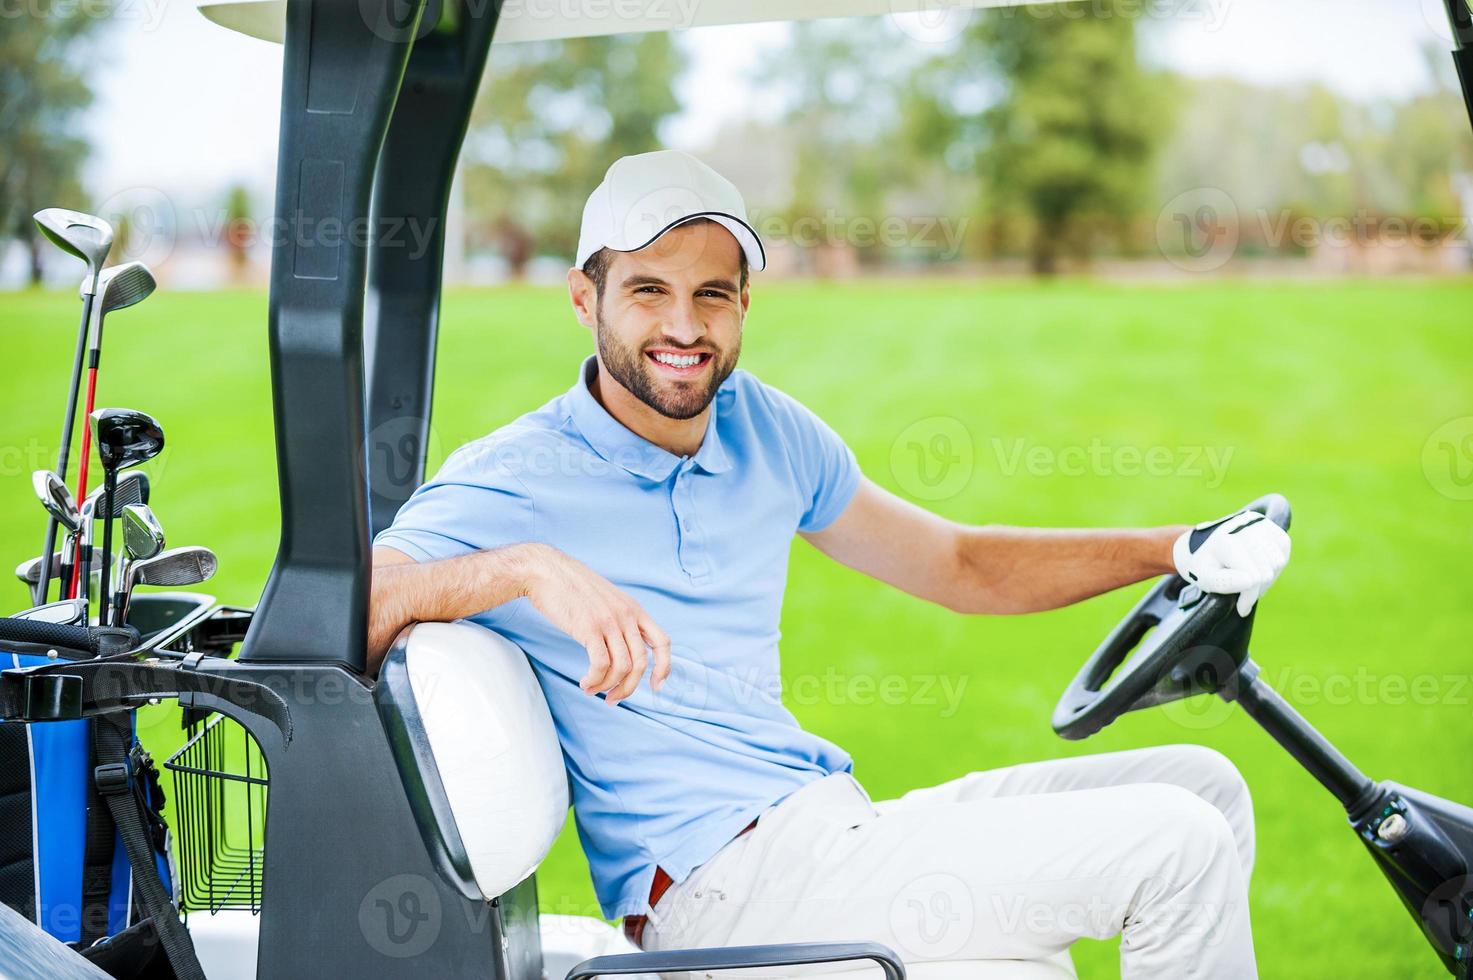 no meu caminho para o próximo buraco. Vista lateral do jovem jogador de golfe masculino feliz dirigindo um carrinho de golfe e olhando para a câmera foto